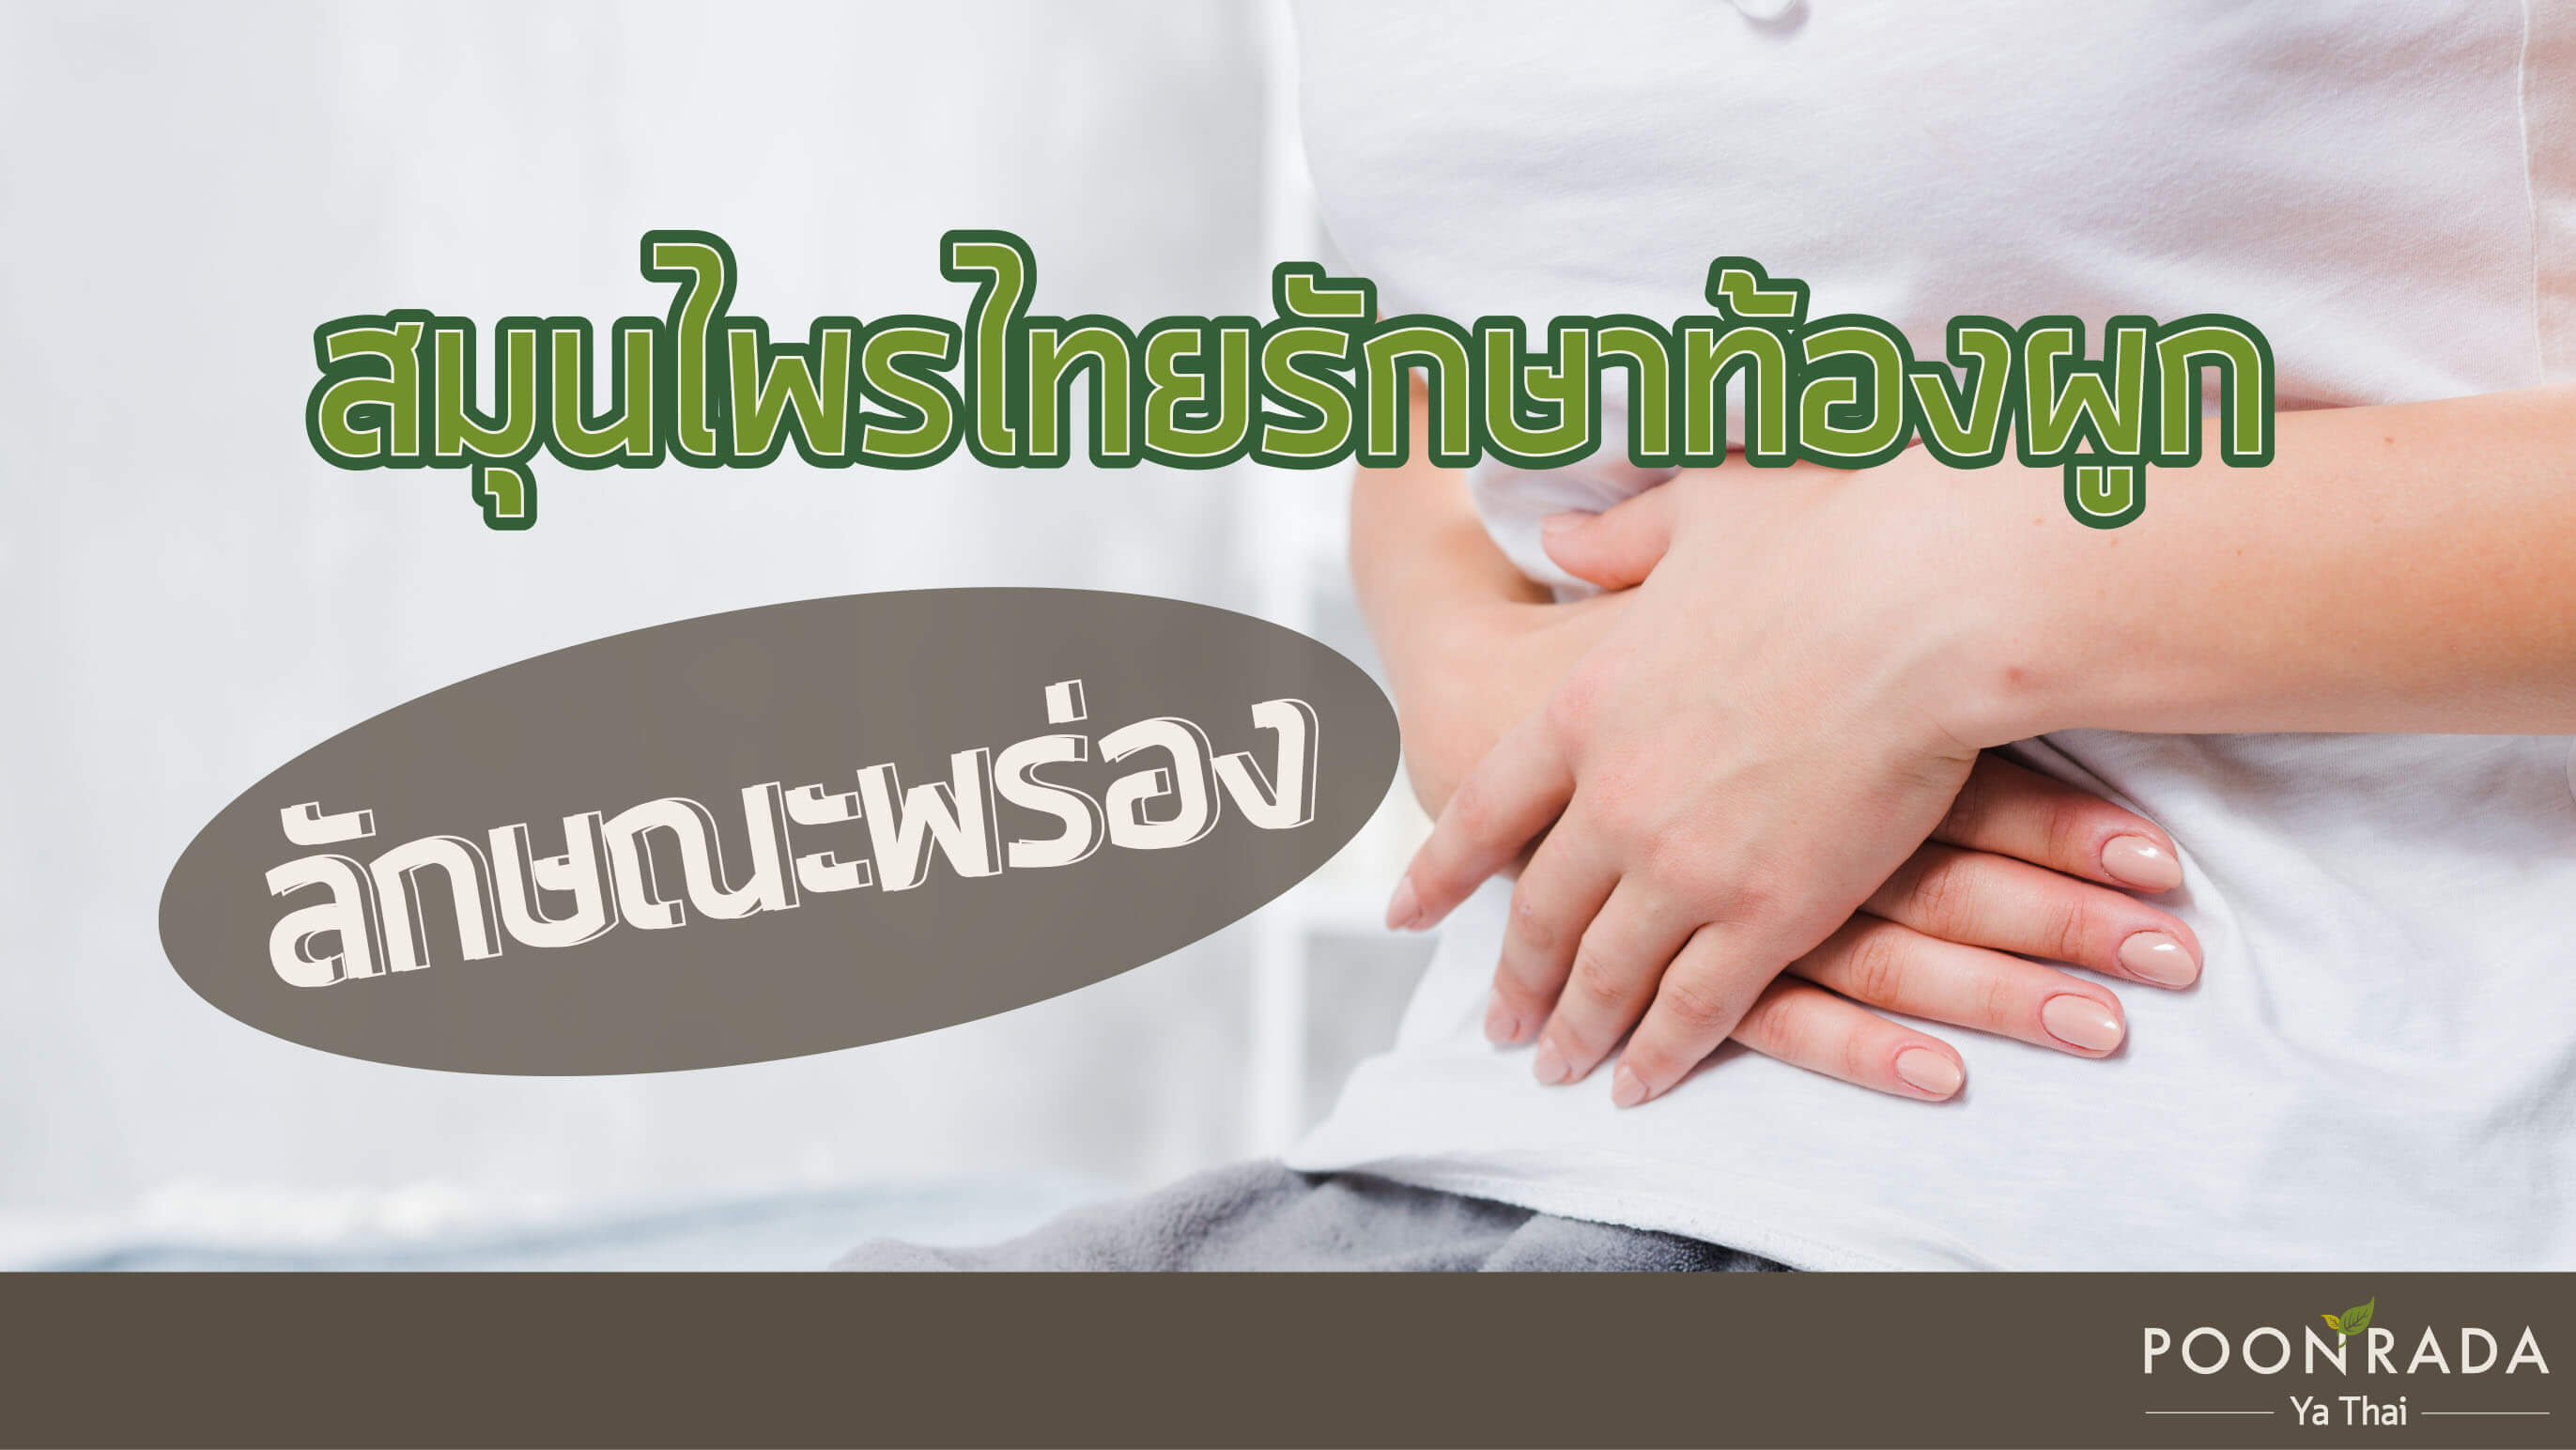 สมุนไพรไทยรักษาท้องผูกลักษณะพร่อง